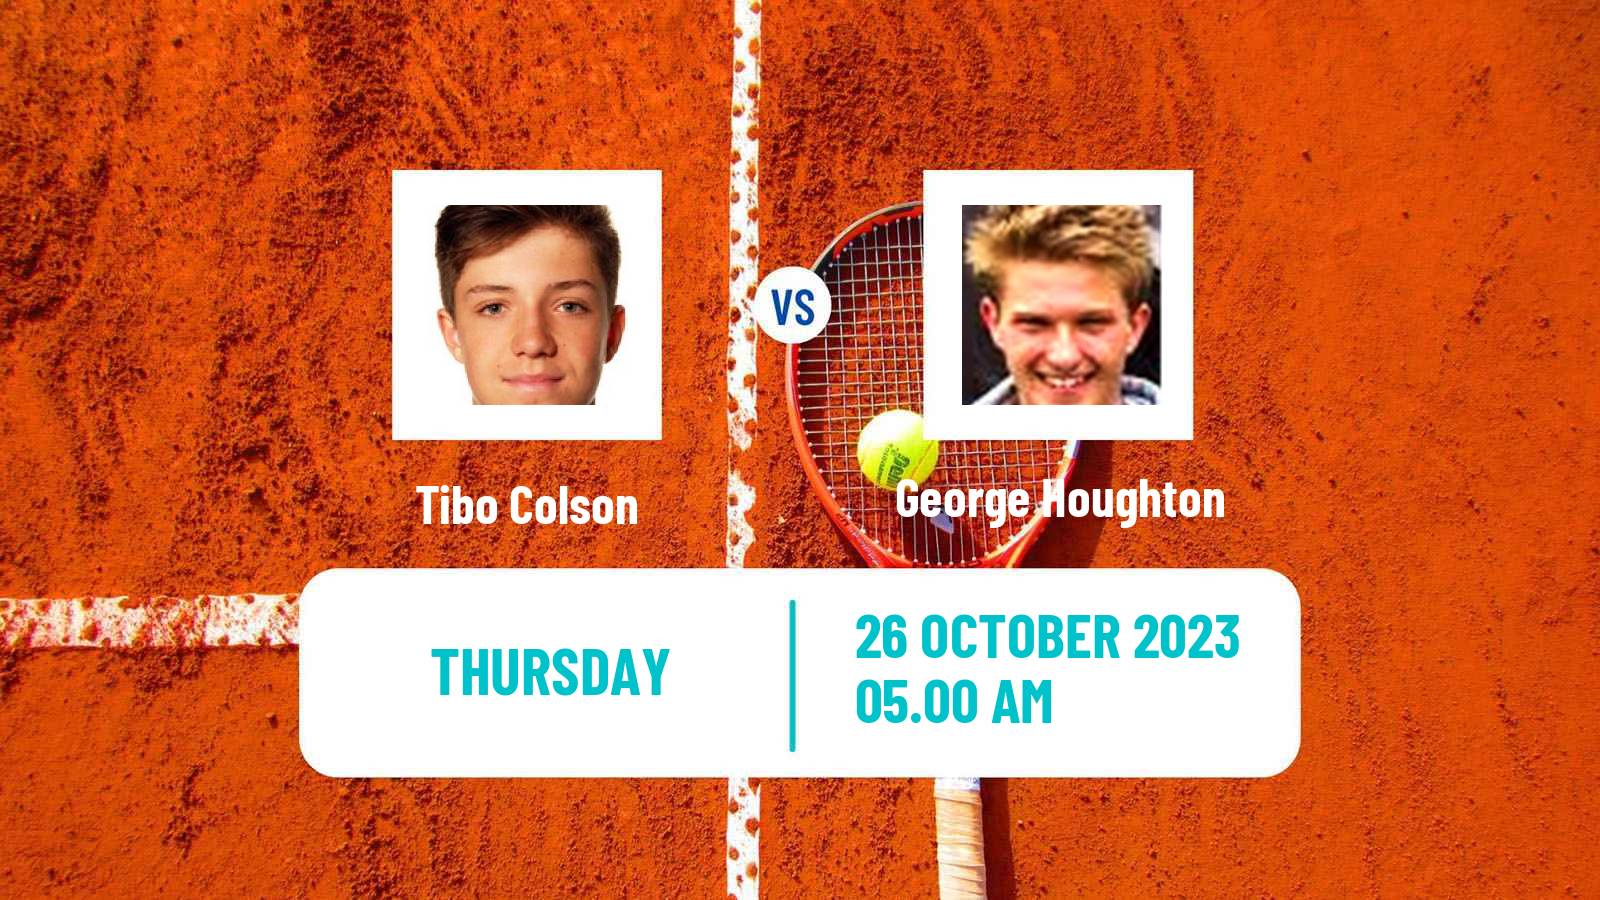 Tennis ITF M25 Glasgow Men Tibo Colson - George Houghton